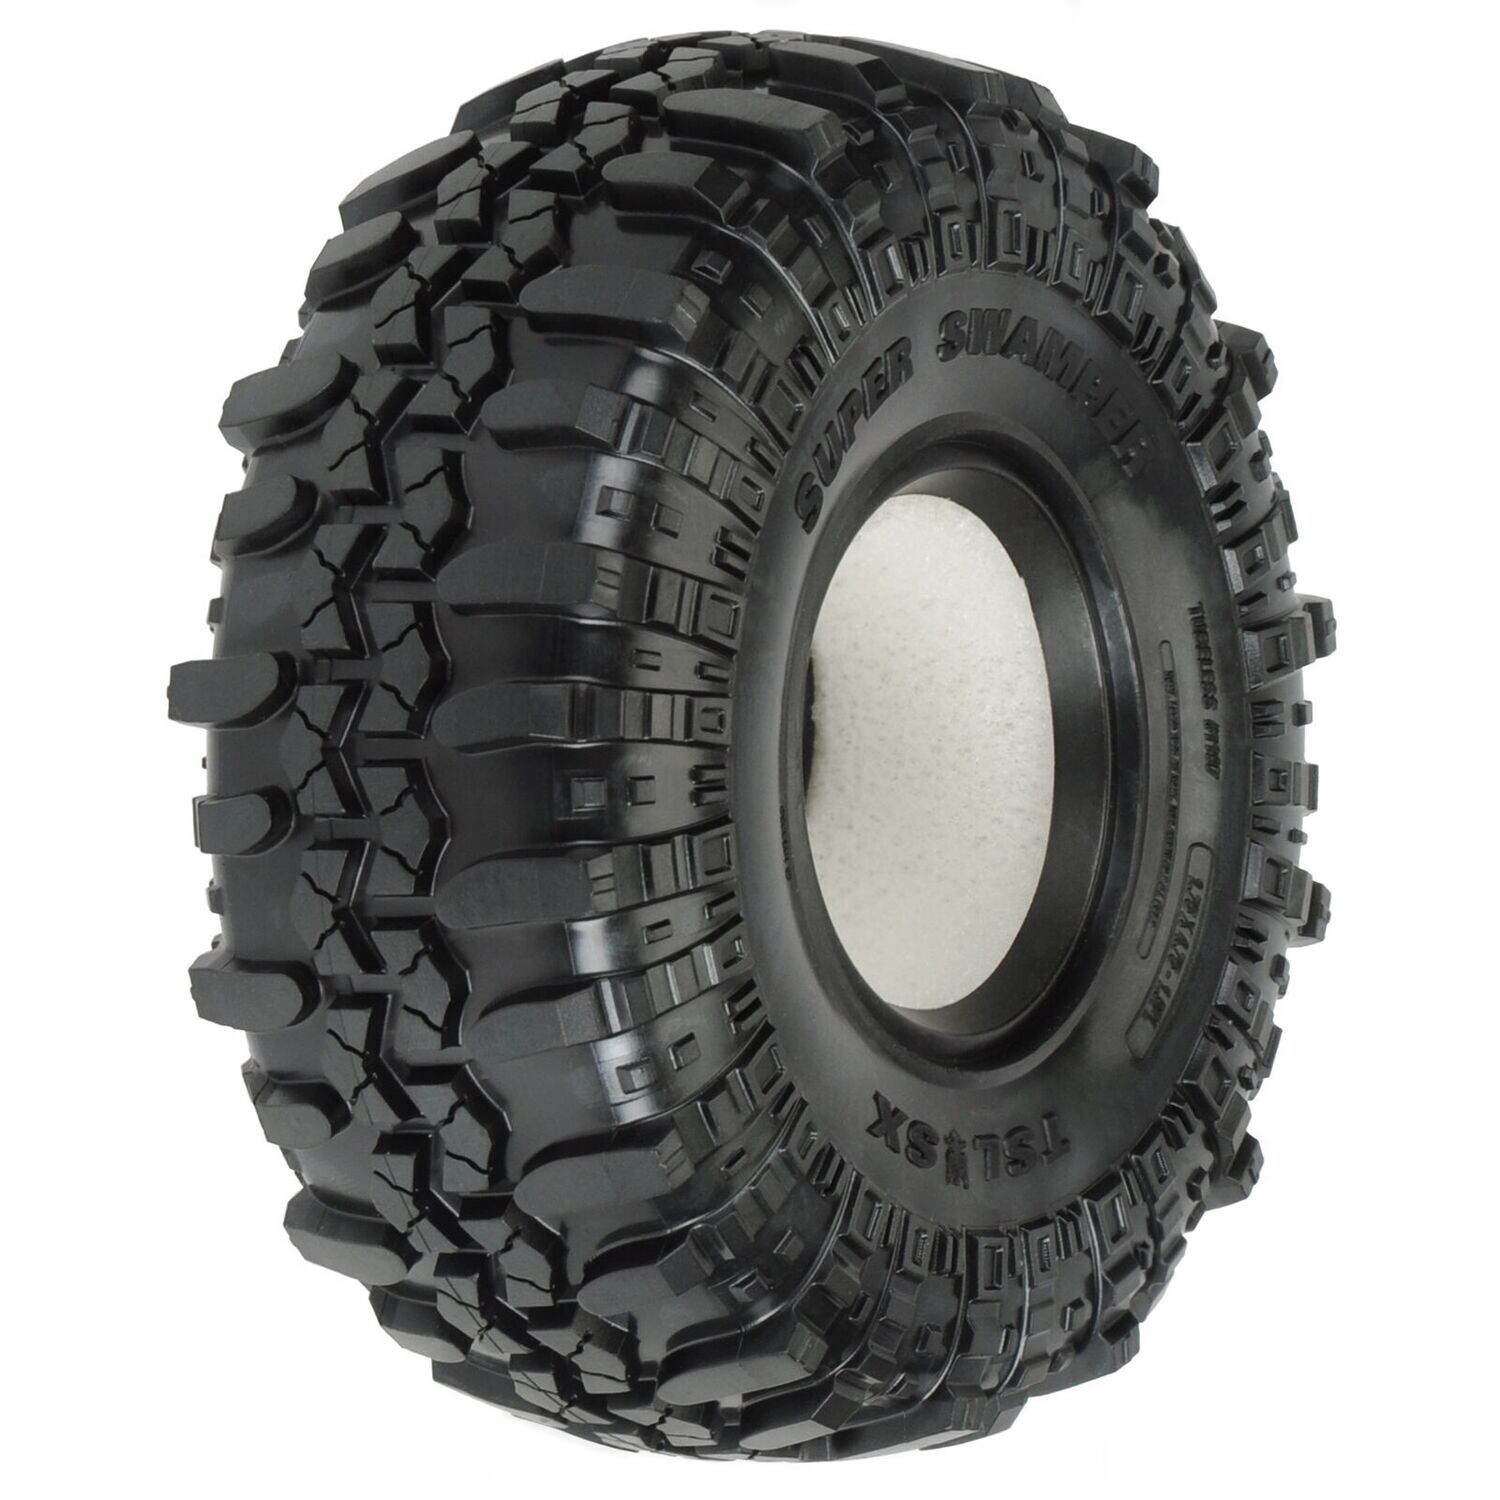 1/10 Interco Super Swamper XL F/R 1.9" Rock Crawling Tires (2)